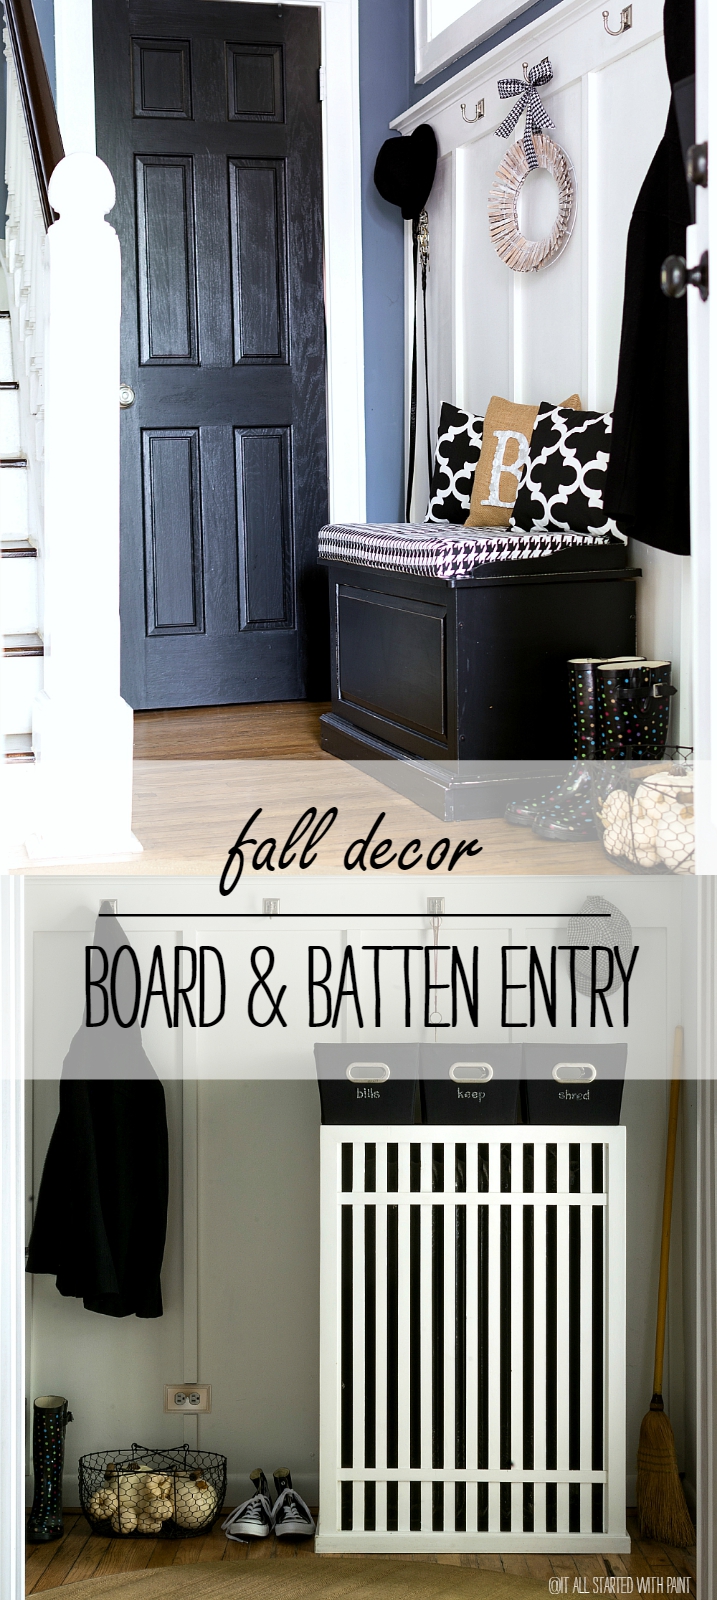 Board & Batten Entry: Black, White, Burlap For Fall